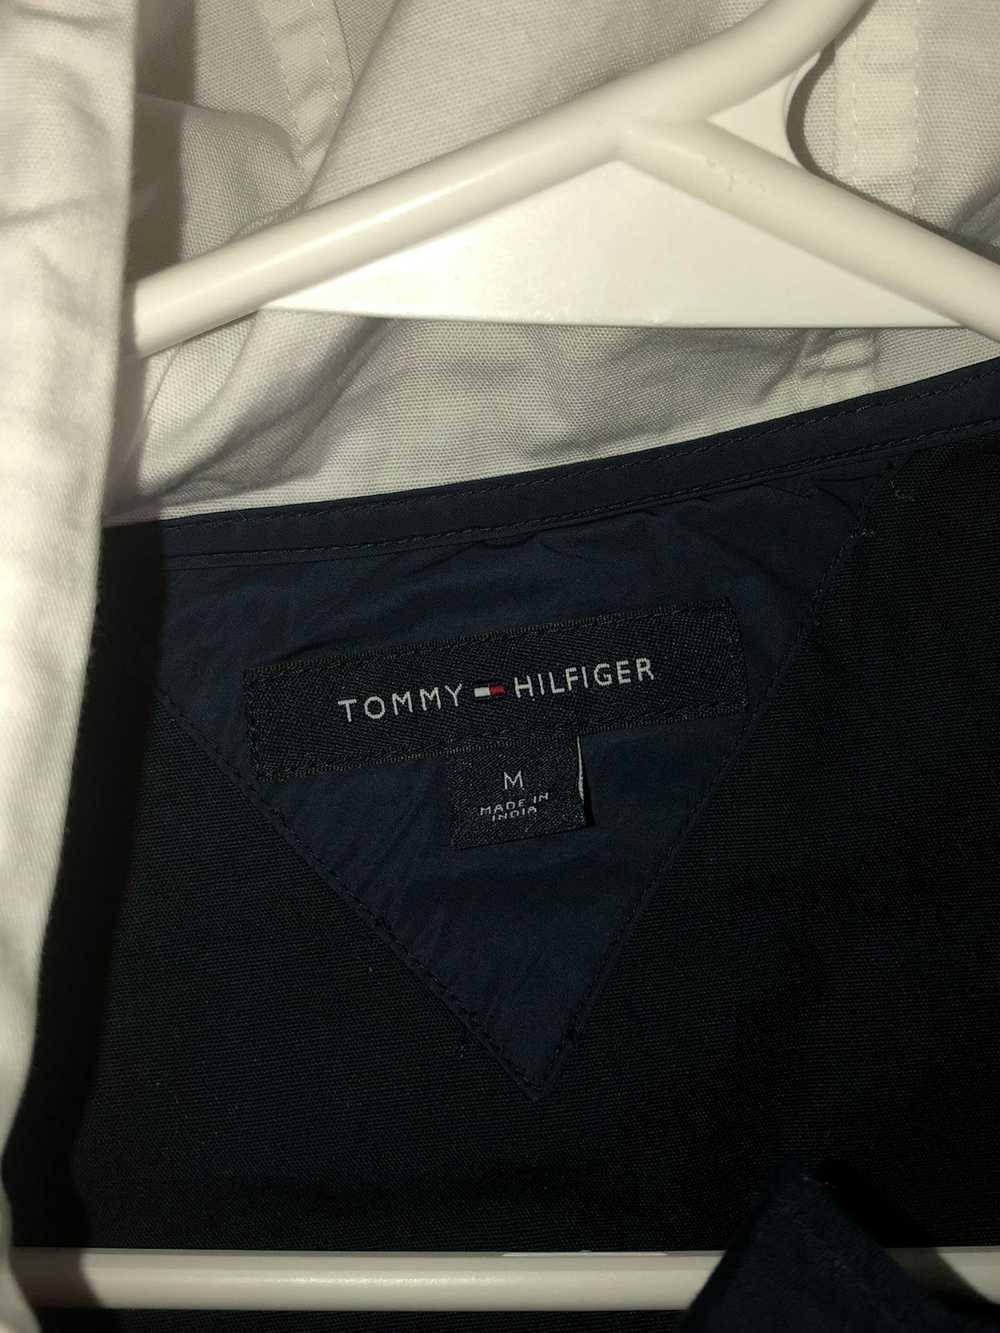 Tommy Hilfiger tommy hilfiger jacket - image 4